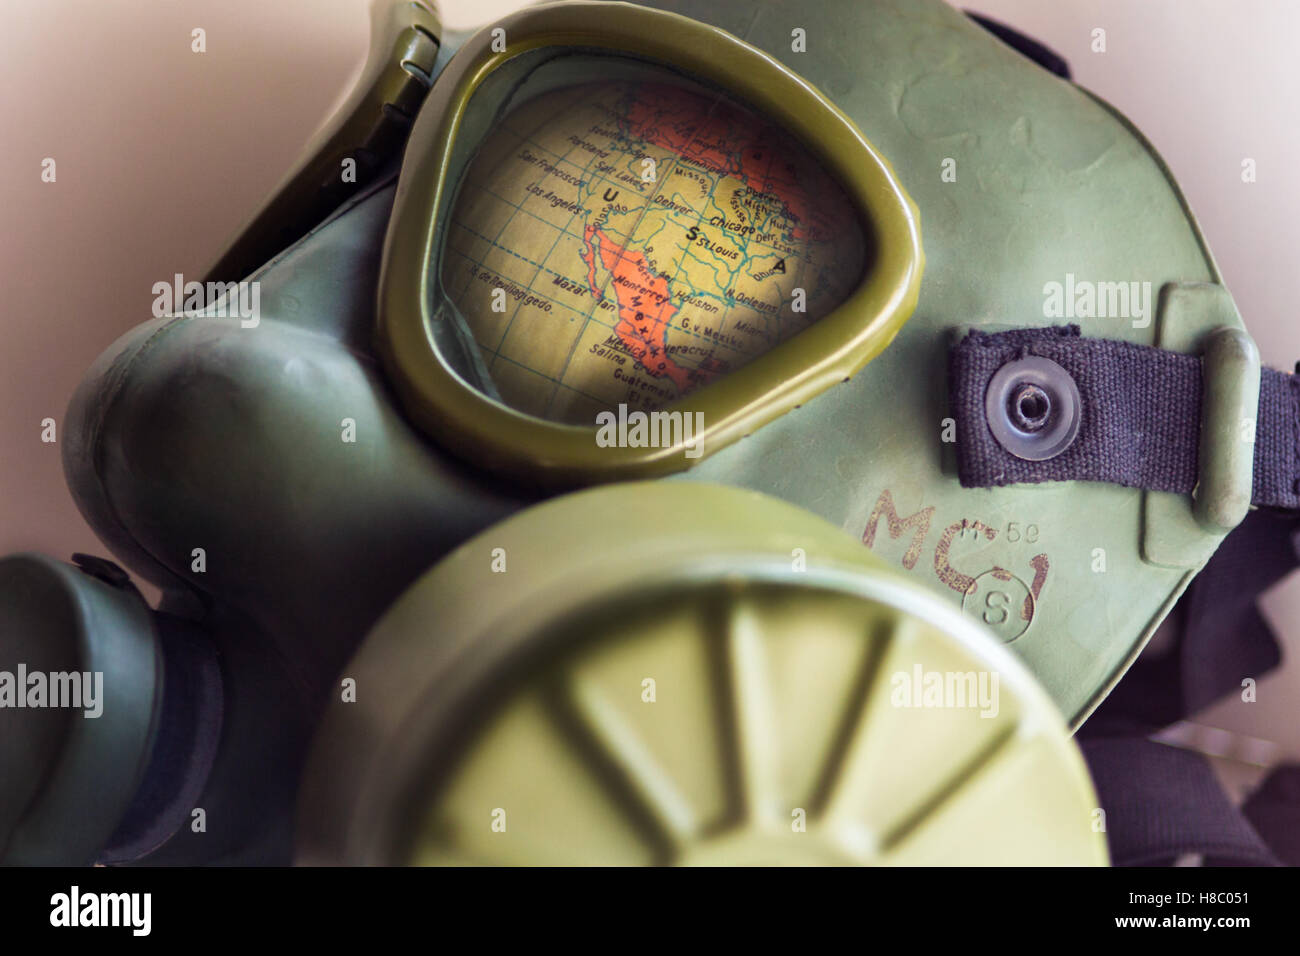 Belgrado, Serbia - Noviembre 10, 2016: la parte del mapa del mundo con los Estados Unidos de América muestra a través de un ejército de WWII máscara de gas (Fabricante desconocido) Foto de stock